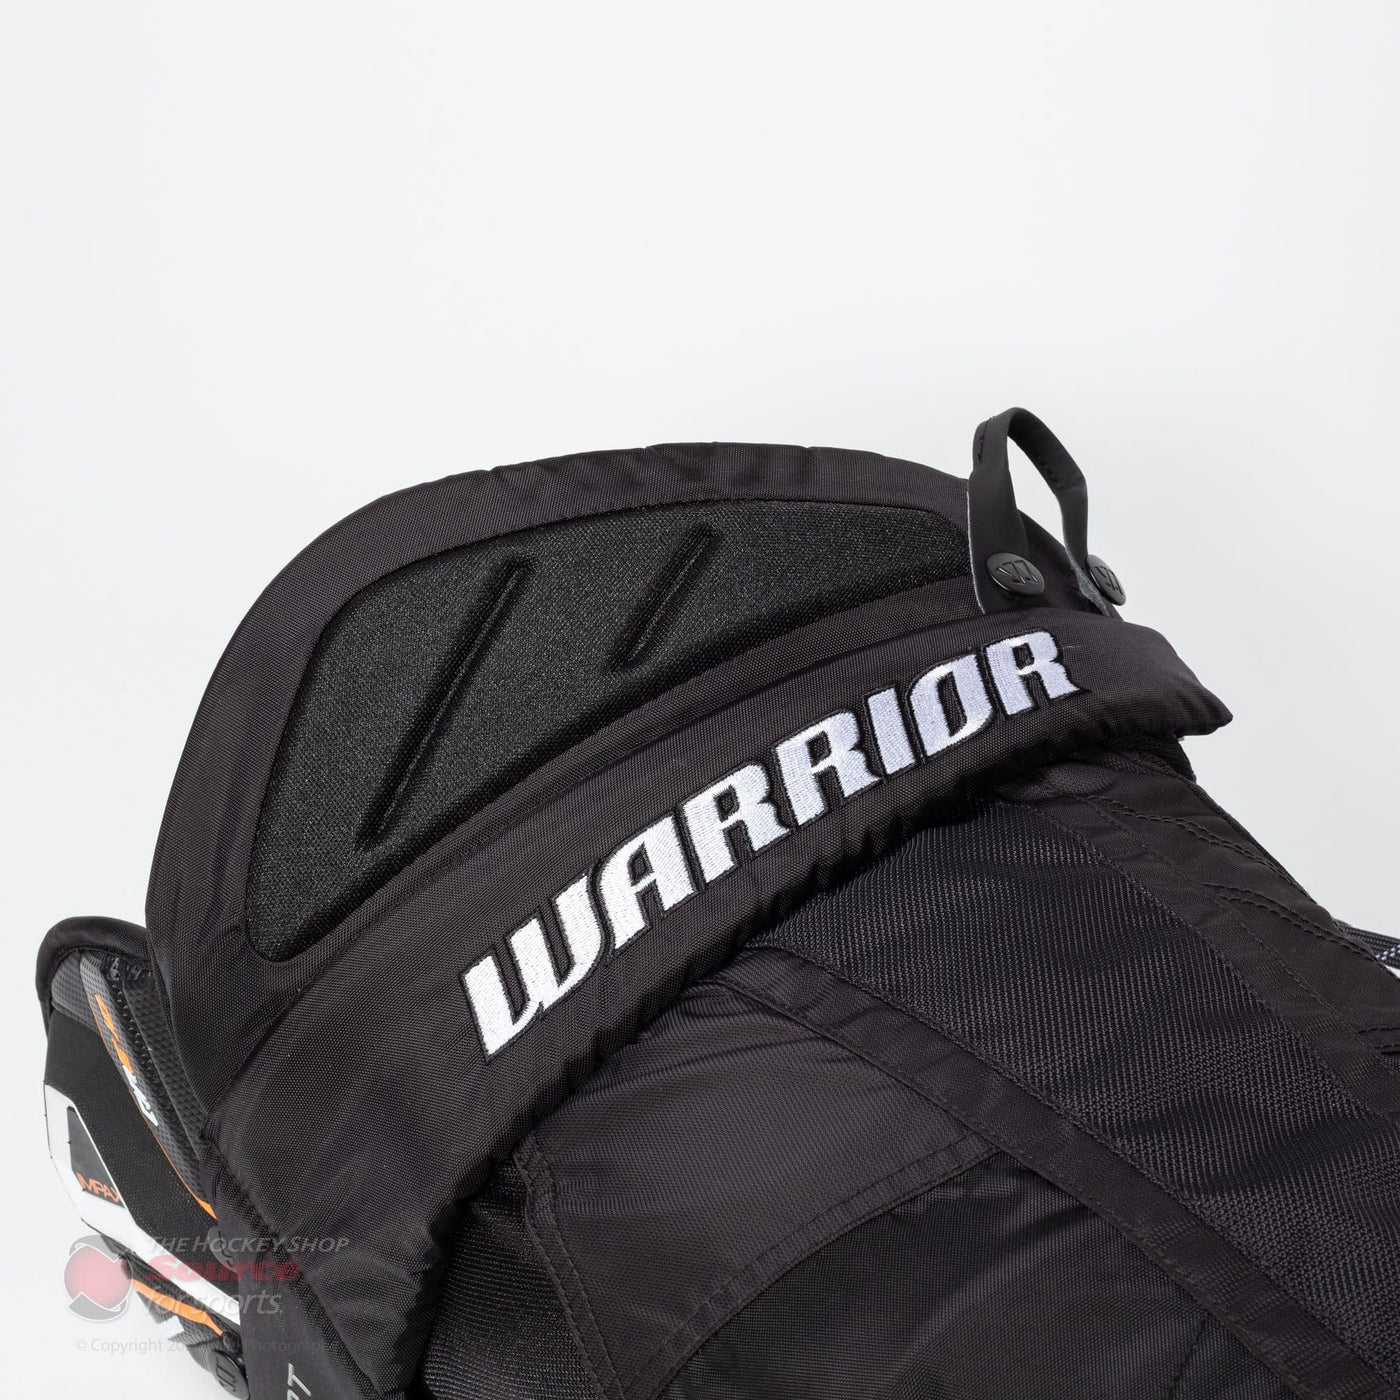 Warrior Covert QRE 10 Senior Hockey Pants